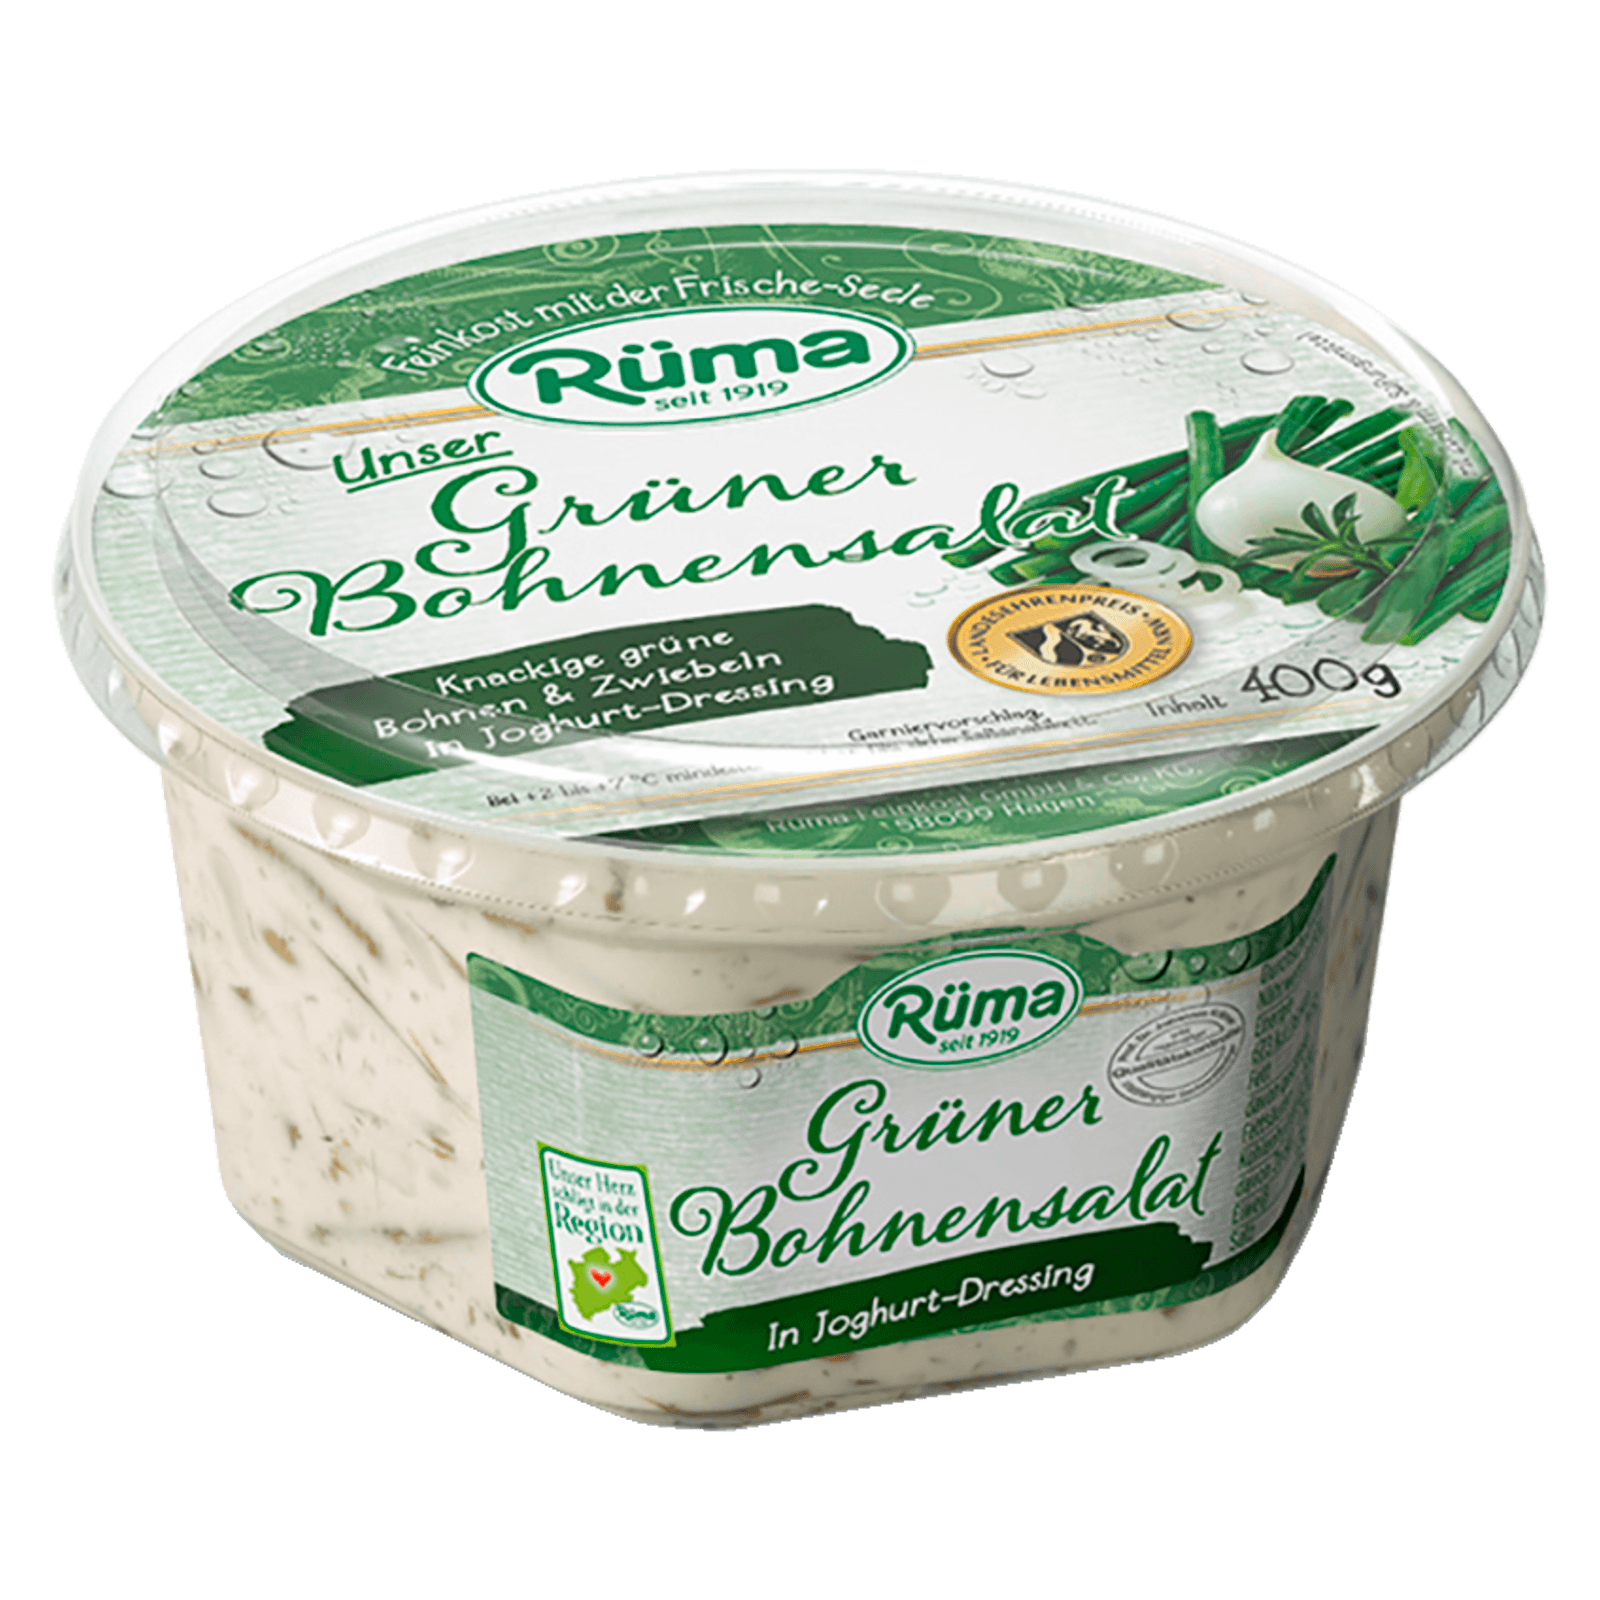 Rüma Unser Grüner Bohnensalat 400g  für 2.59 EUR